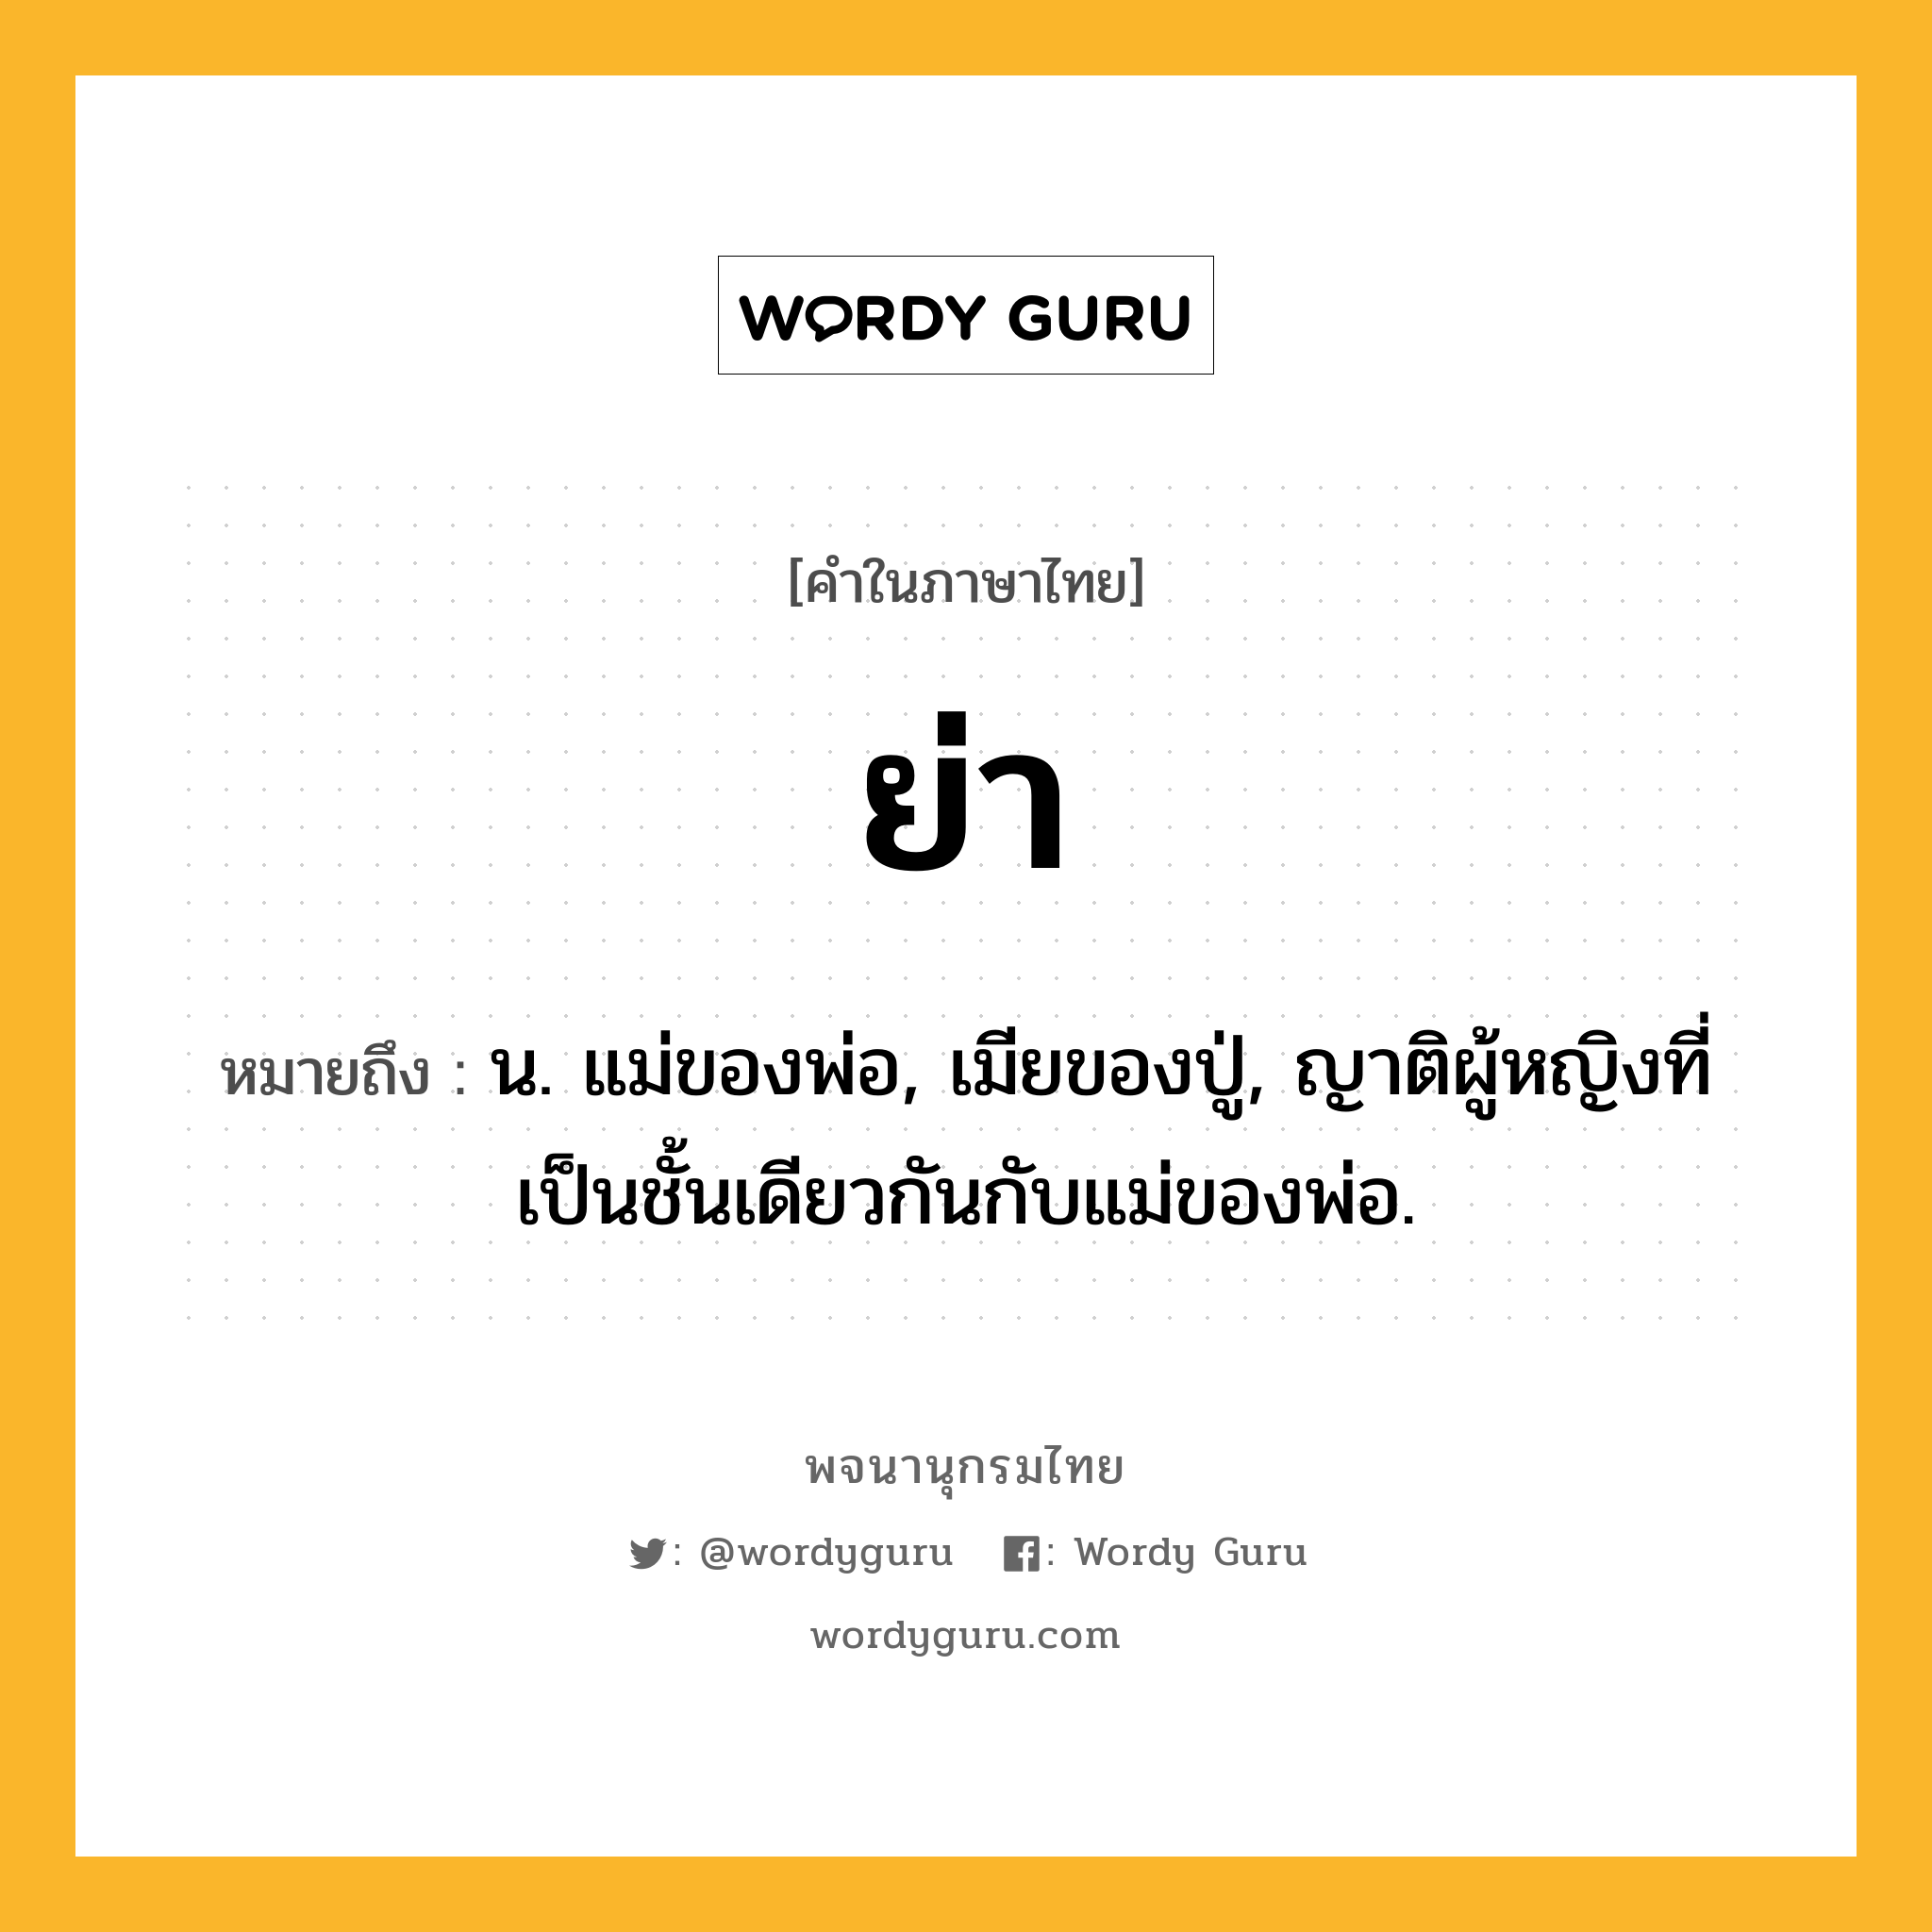 ย่า หมายถึงอะไร?, คำในภาษาไทย ย่า หมายถึง น. แม่ของพ่อ, เมียของปู่, ญาติผู้หญิงที่เป็นชั้นเดียวกันกับแม่ของพ่อ.